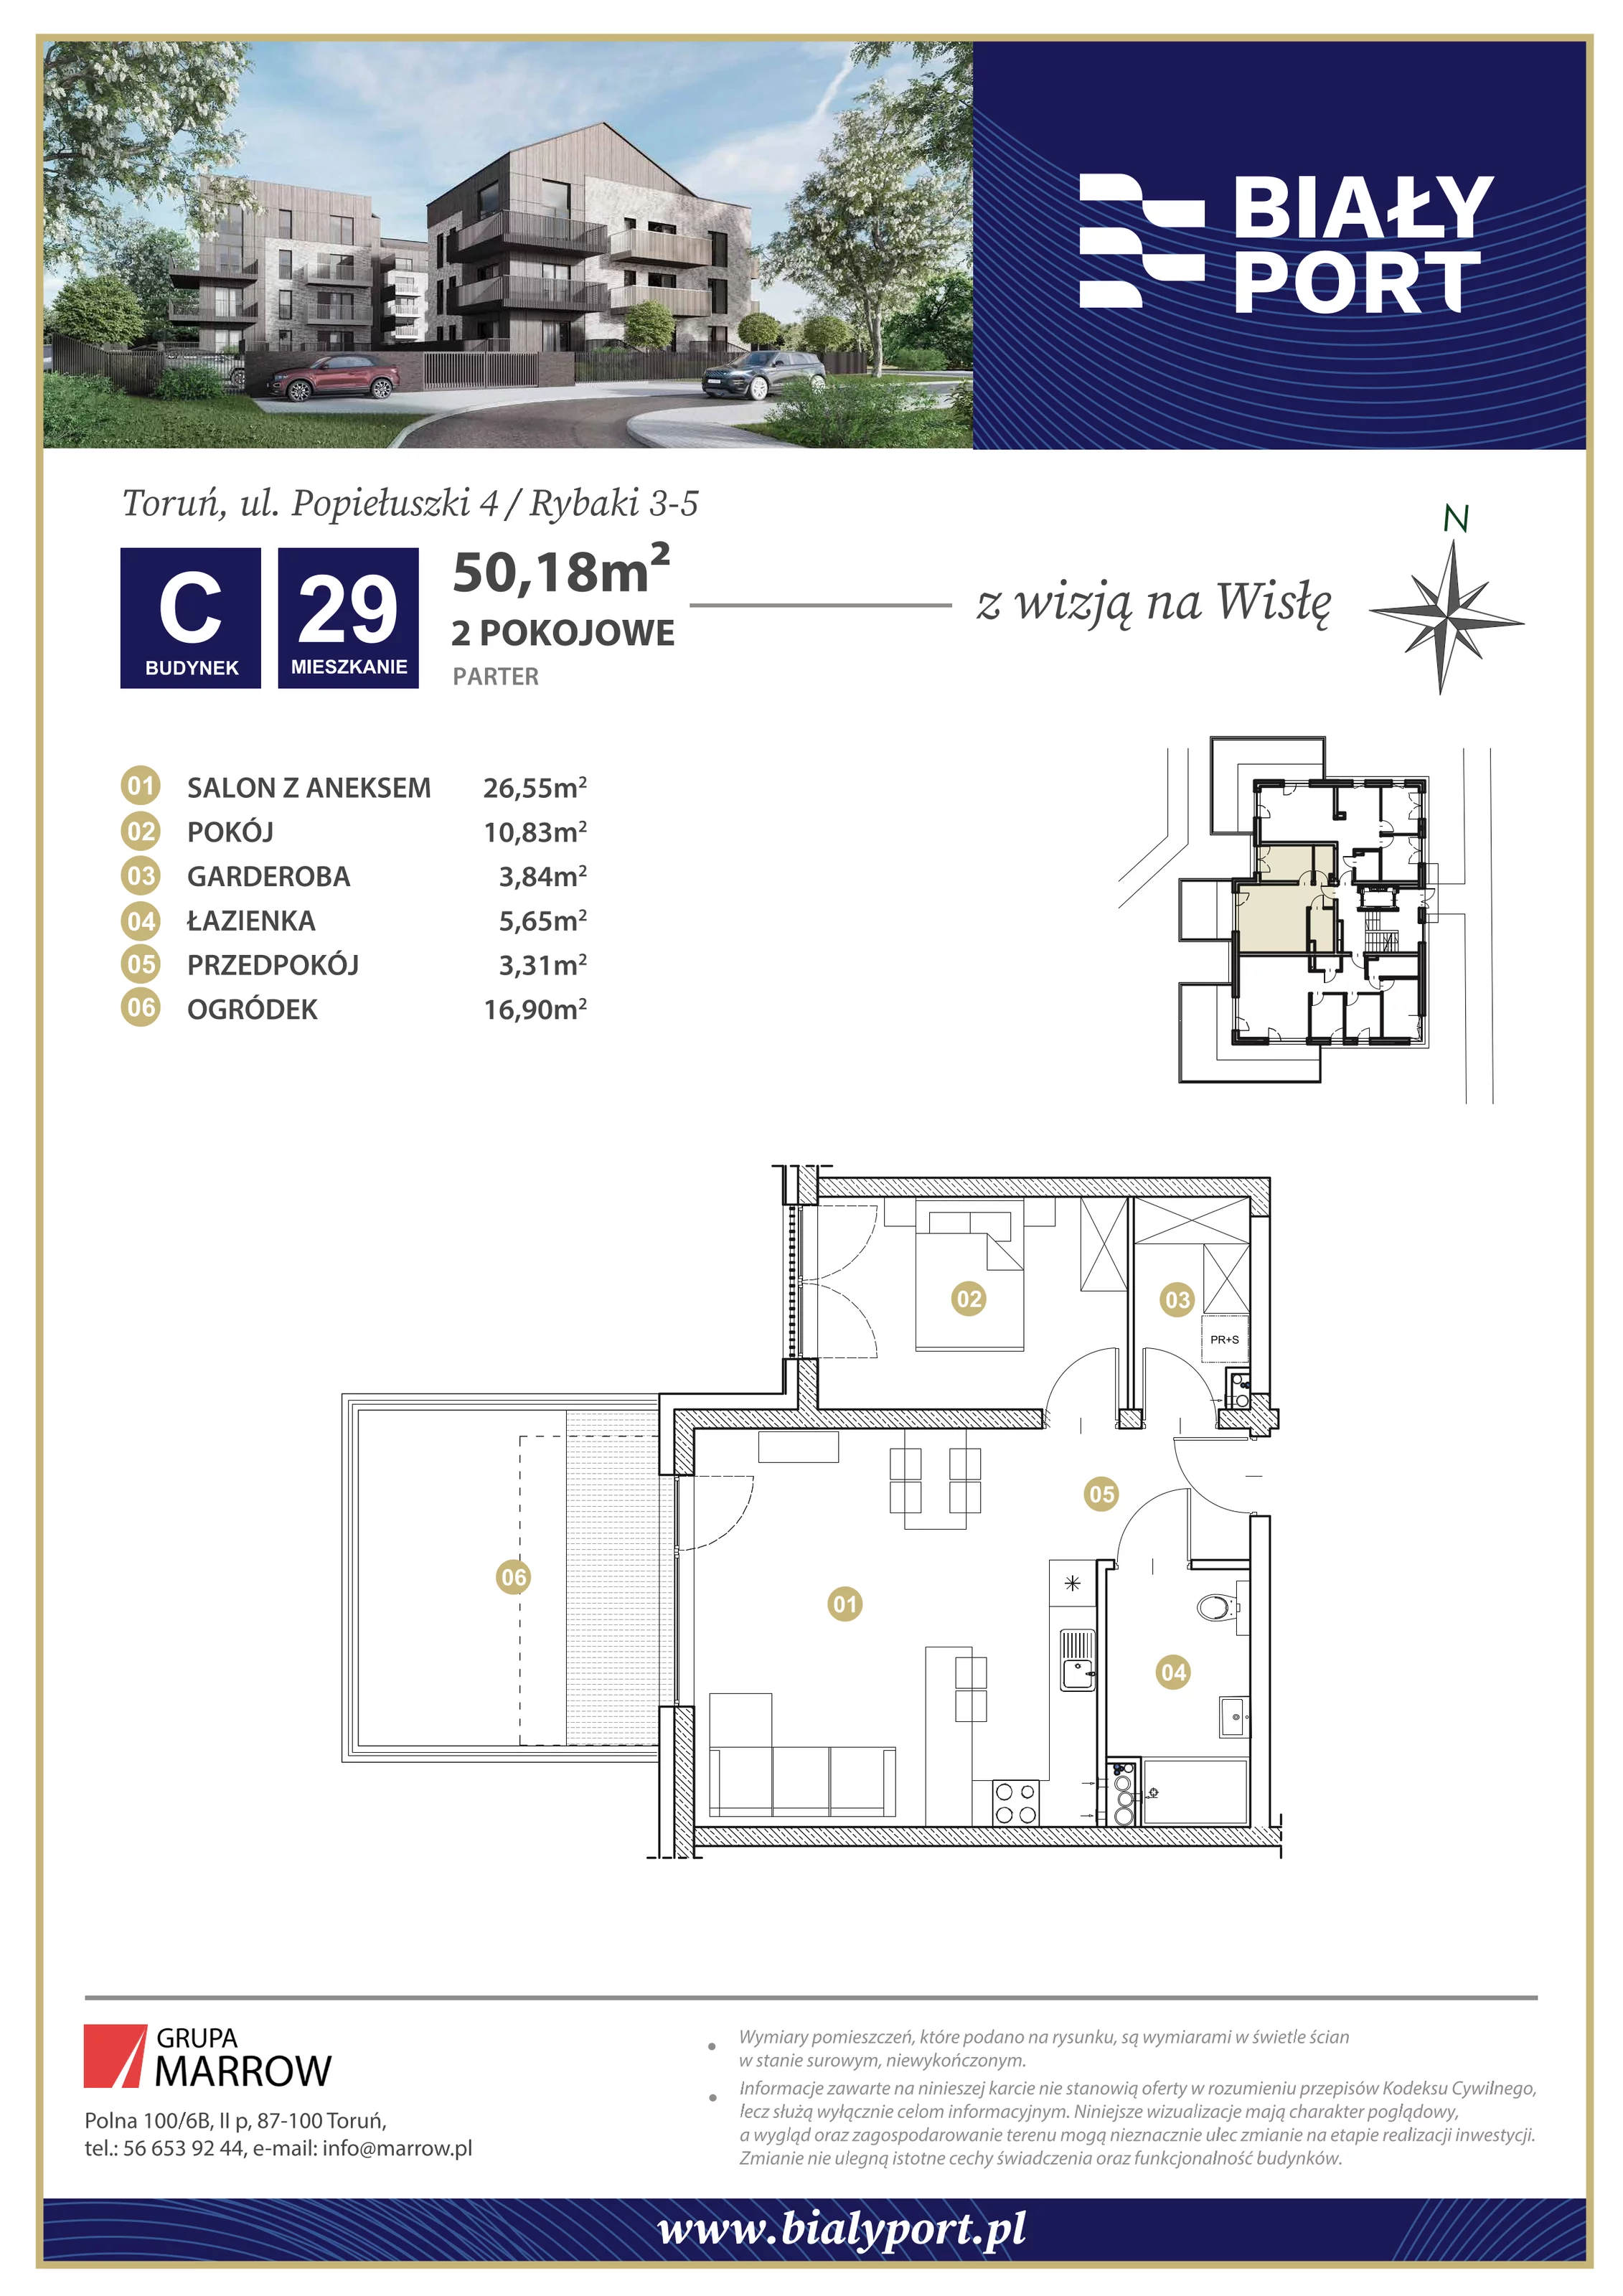 Mieszkanie 50,18 m², parter, oferta nr 29, Biały Port, Toruń, Rybaki, ul. Popiełuszki 4